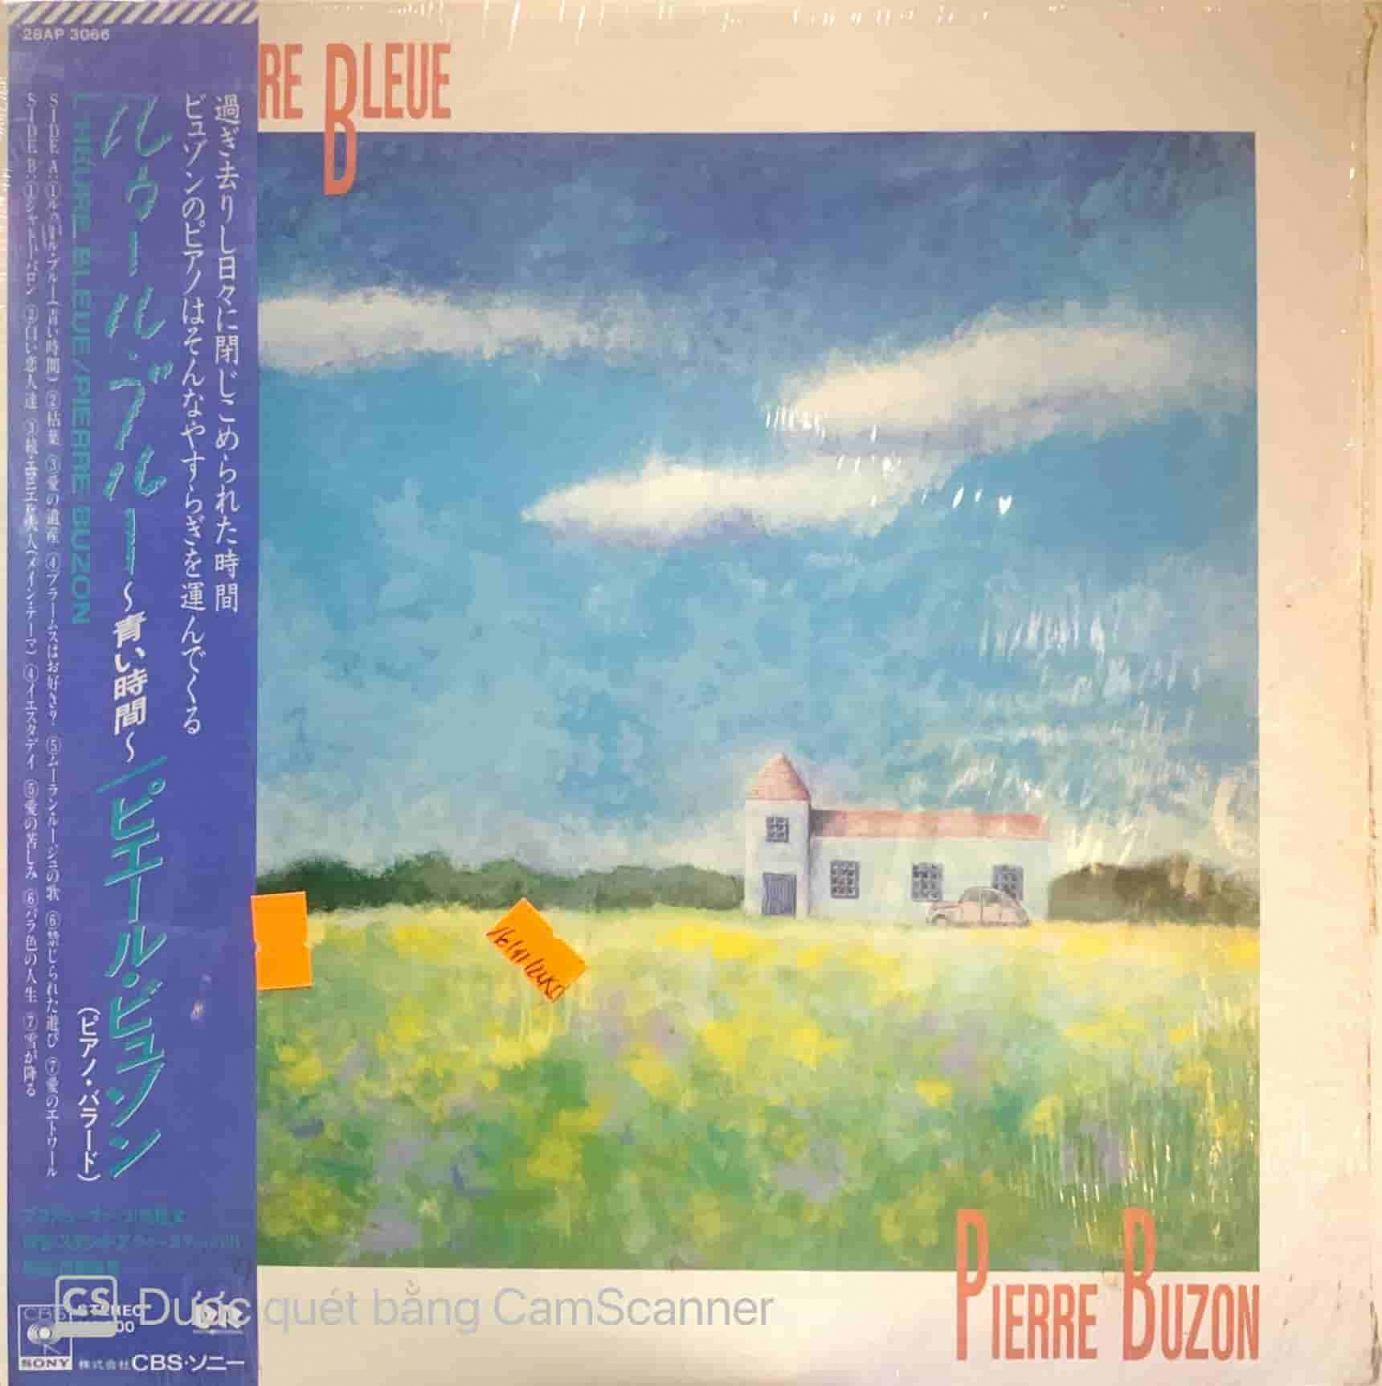 Pierre Buzon – L'Heure Bleue